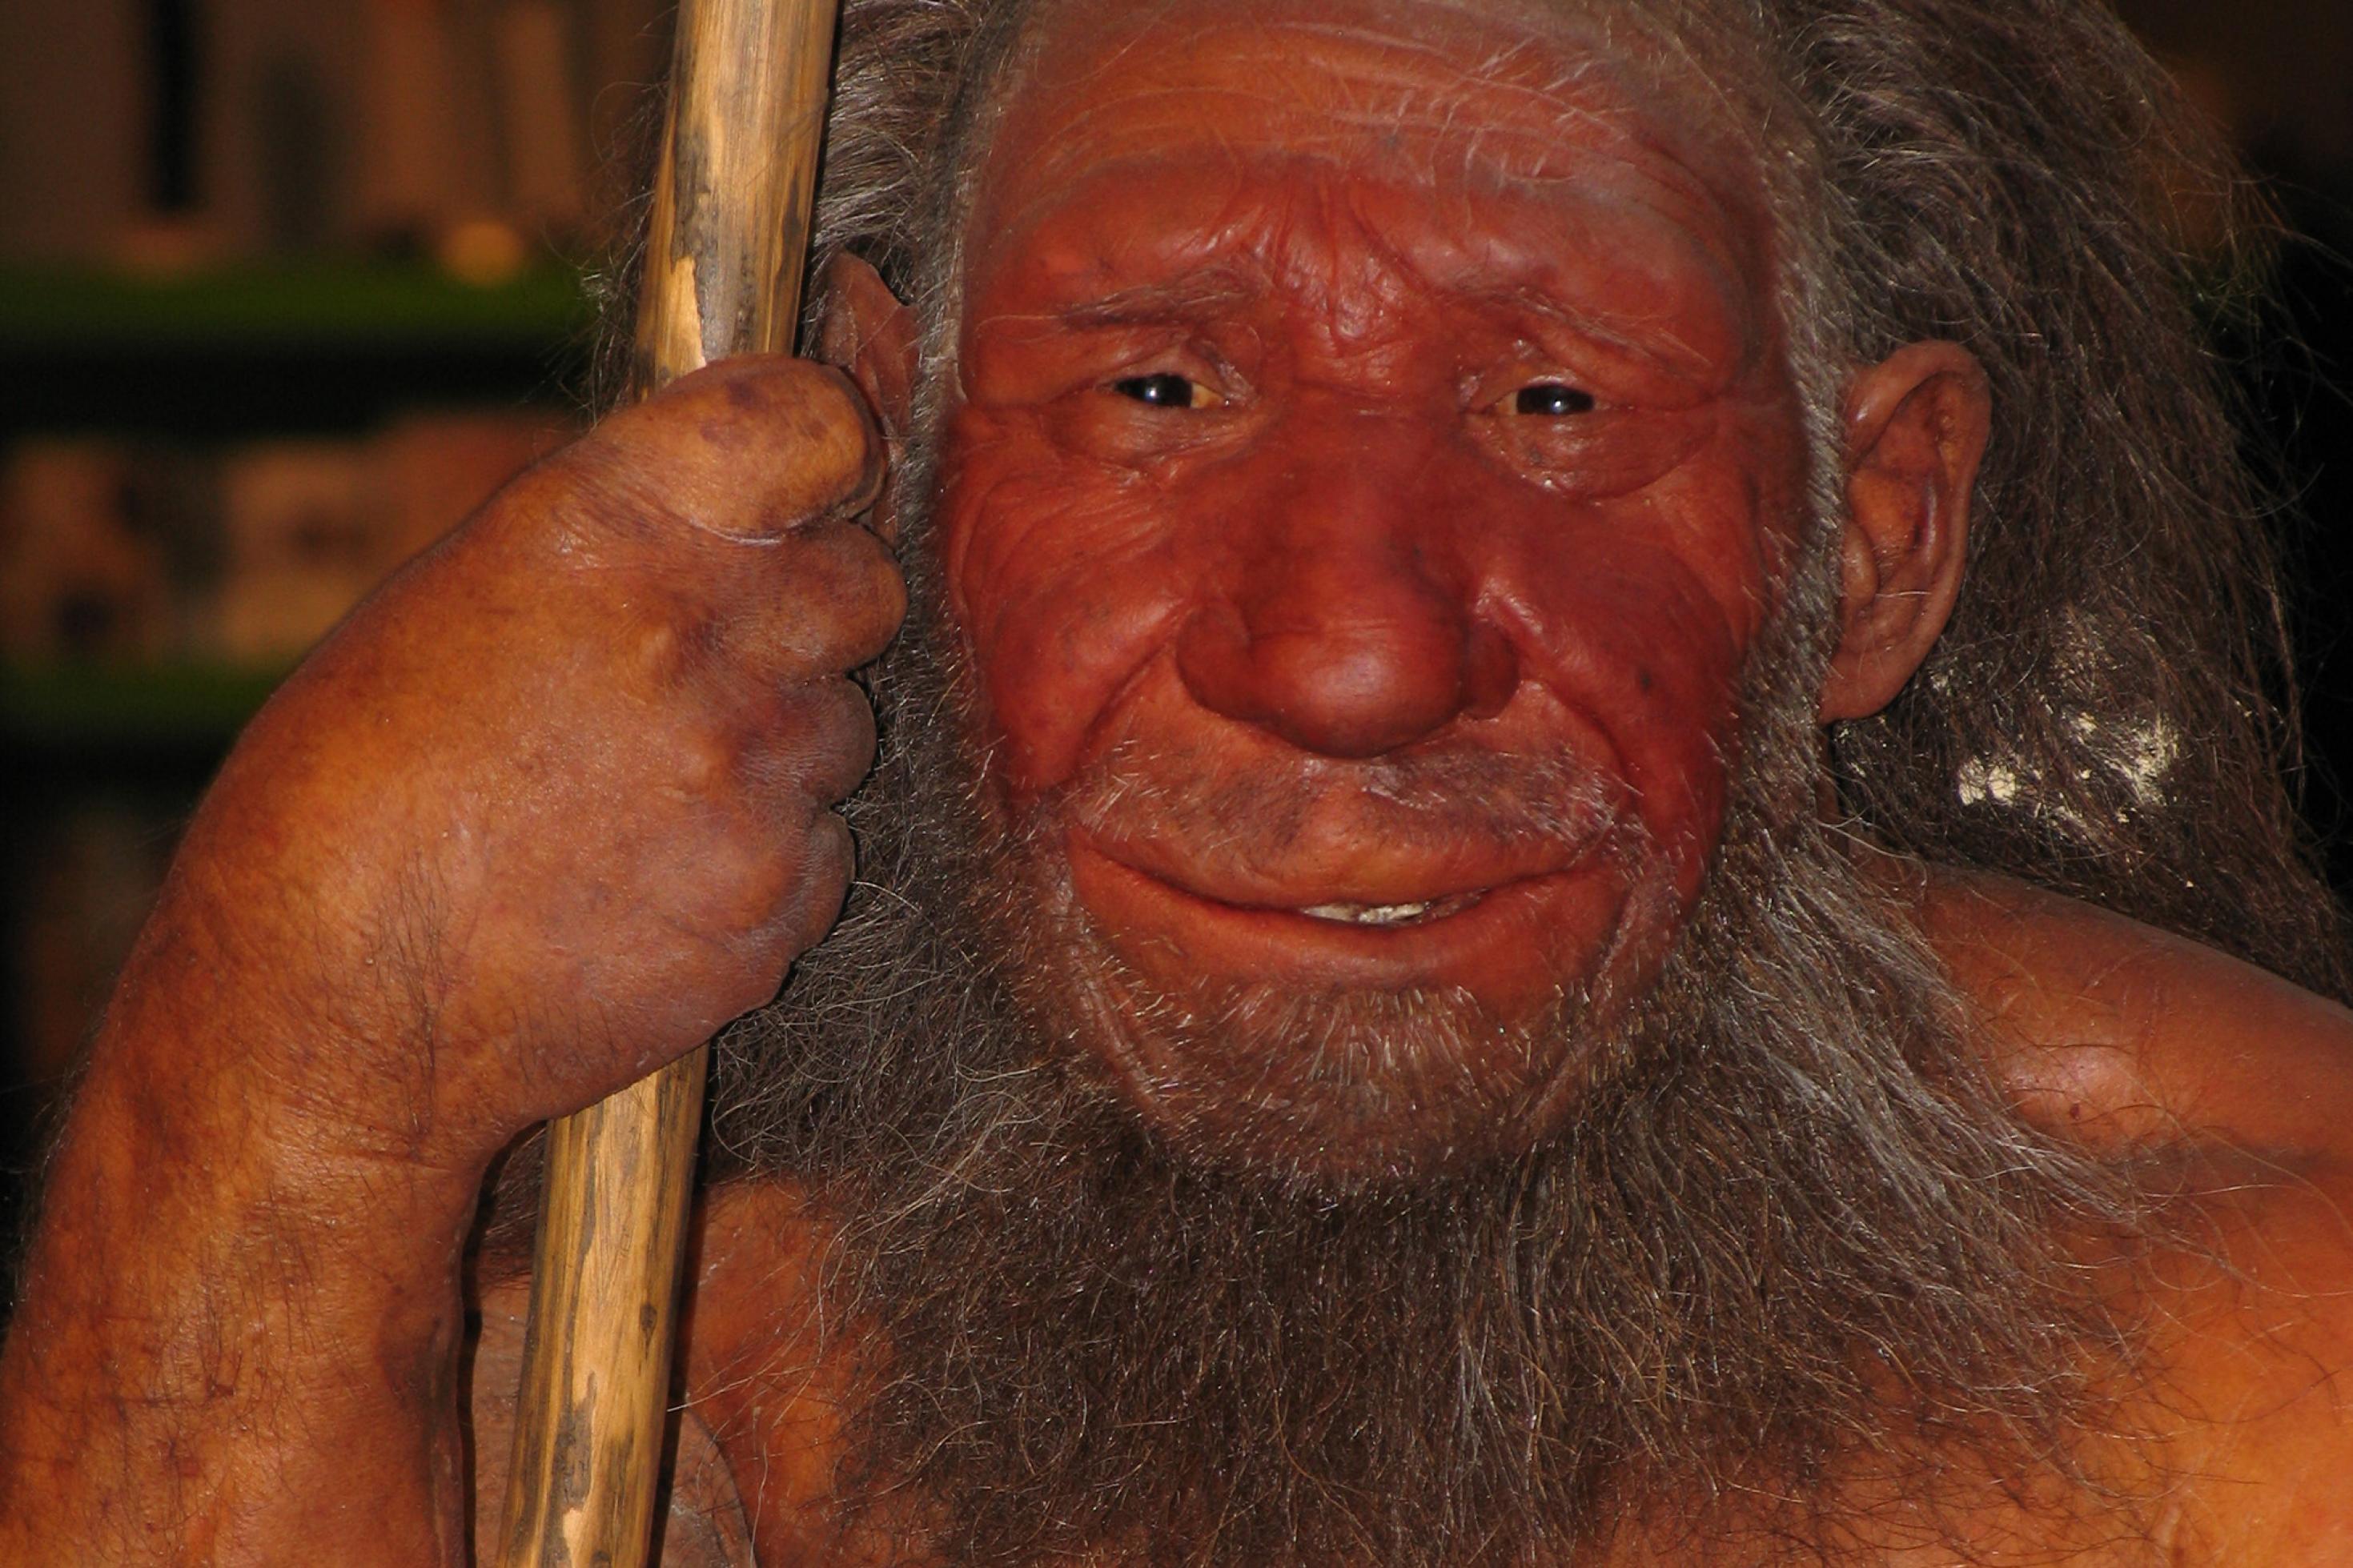 Das Bild zeigt die Rekonstruktion eines männlichen Neandertalers am Neanderthal Museum in Mettmann, der sich auf seinen Speer stützt. Die Urmenschen besaßen enorme Muskeln, große Nasen und recht kräftige Wülste über den Augen. Genetisches Material von ihnen findet sich in Europäern und Asiaten, nach neuesten Erkenntnissen aber auch in Afrikanern.